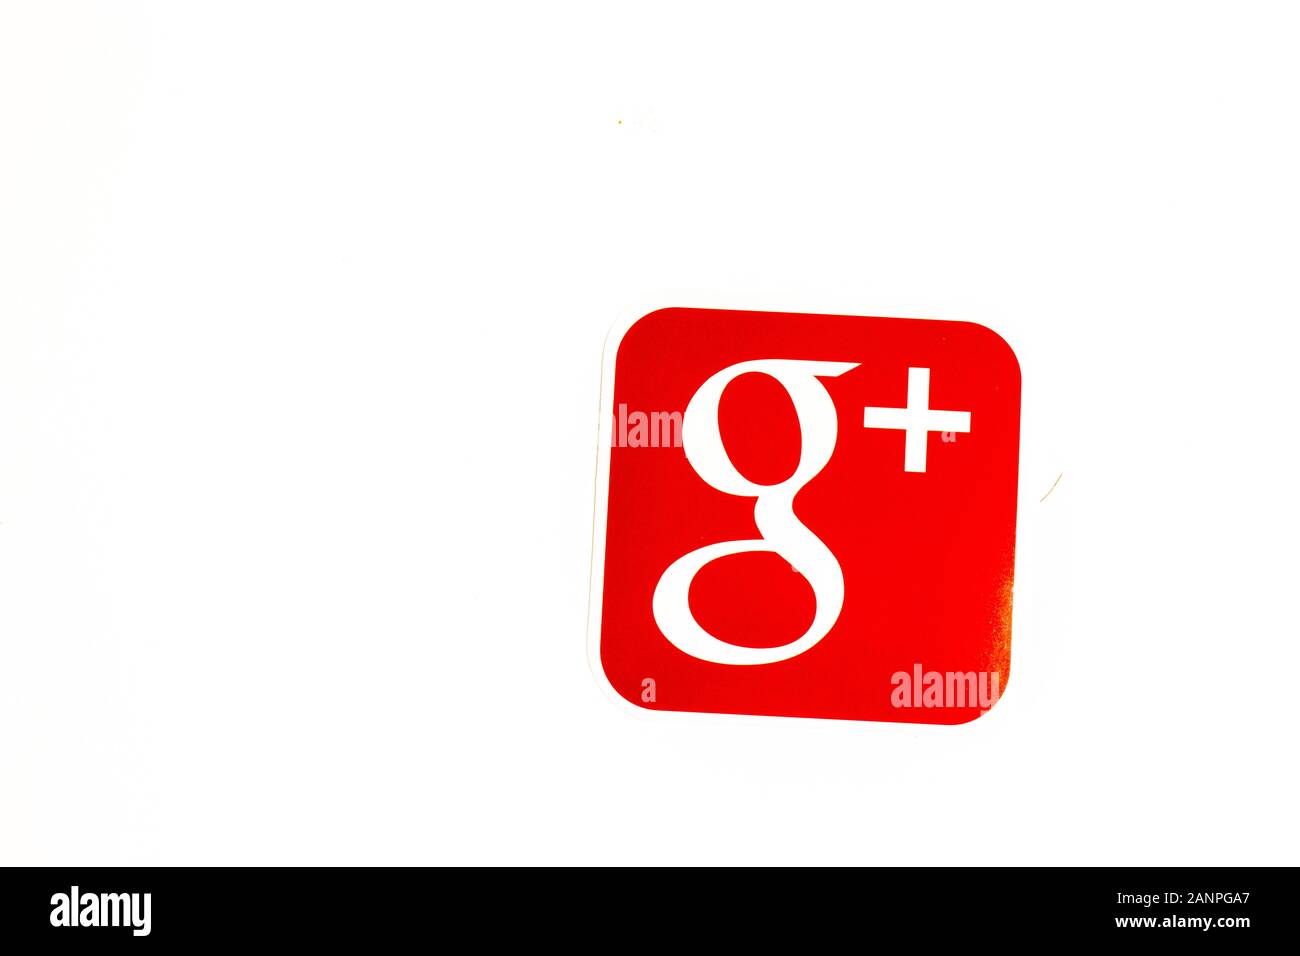 Los Angeles, Californie, États-Unis - 17 janvier 2020: Logo Google plus sur fond blanc avec espace de copie. Icône des médias sociaux, éditorial illustratif Banque D'Images